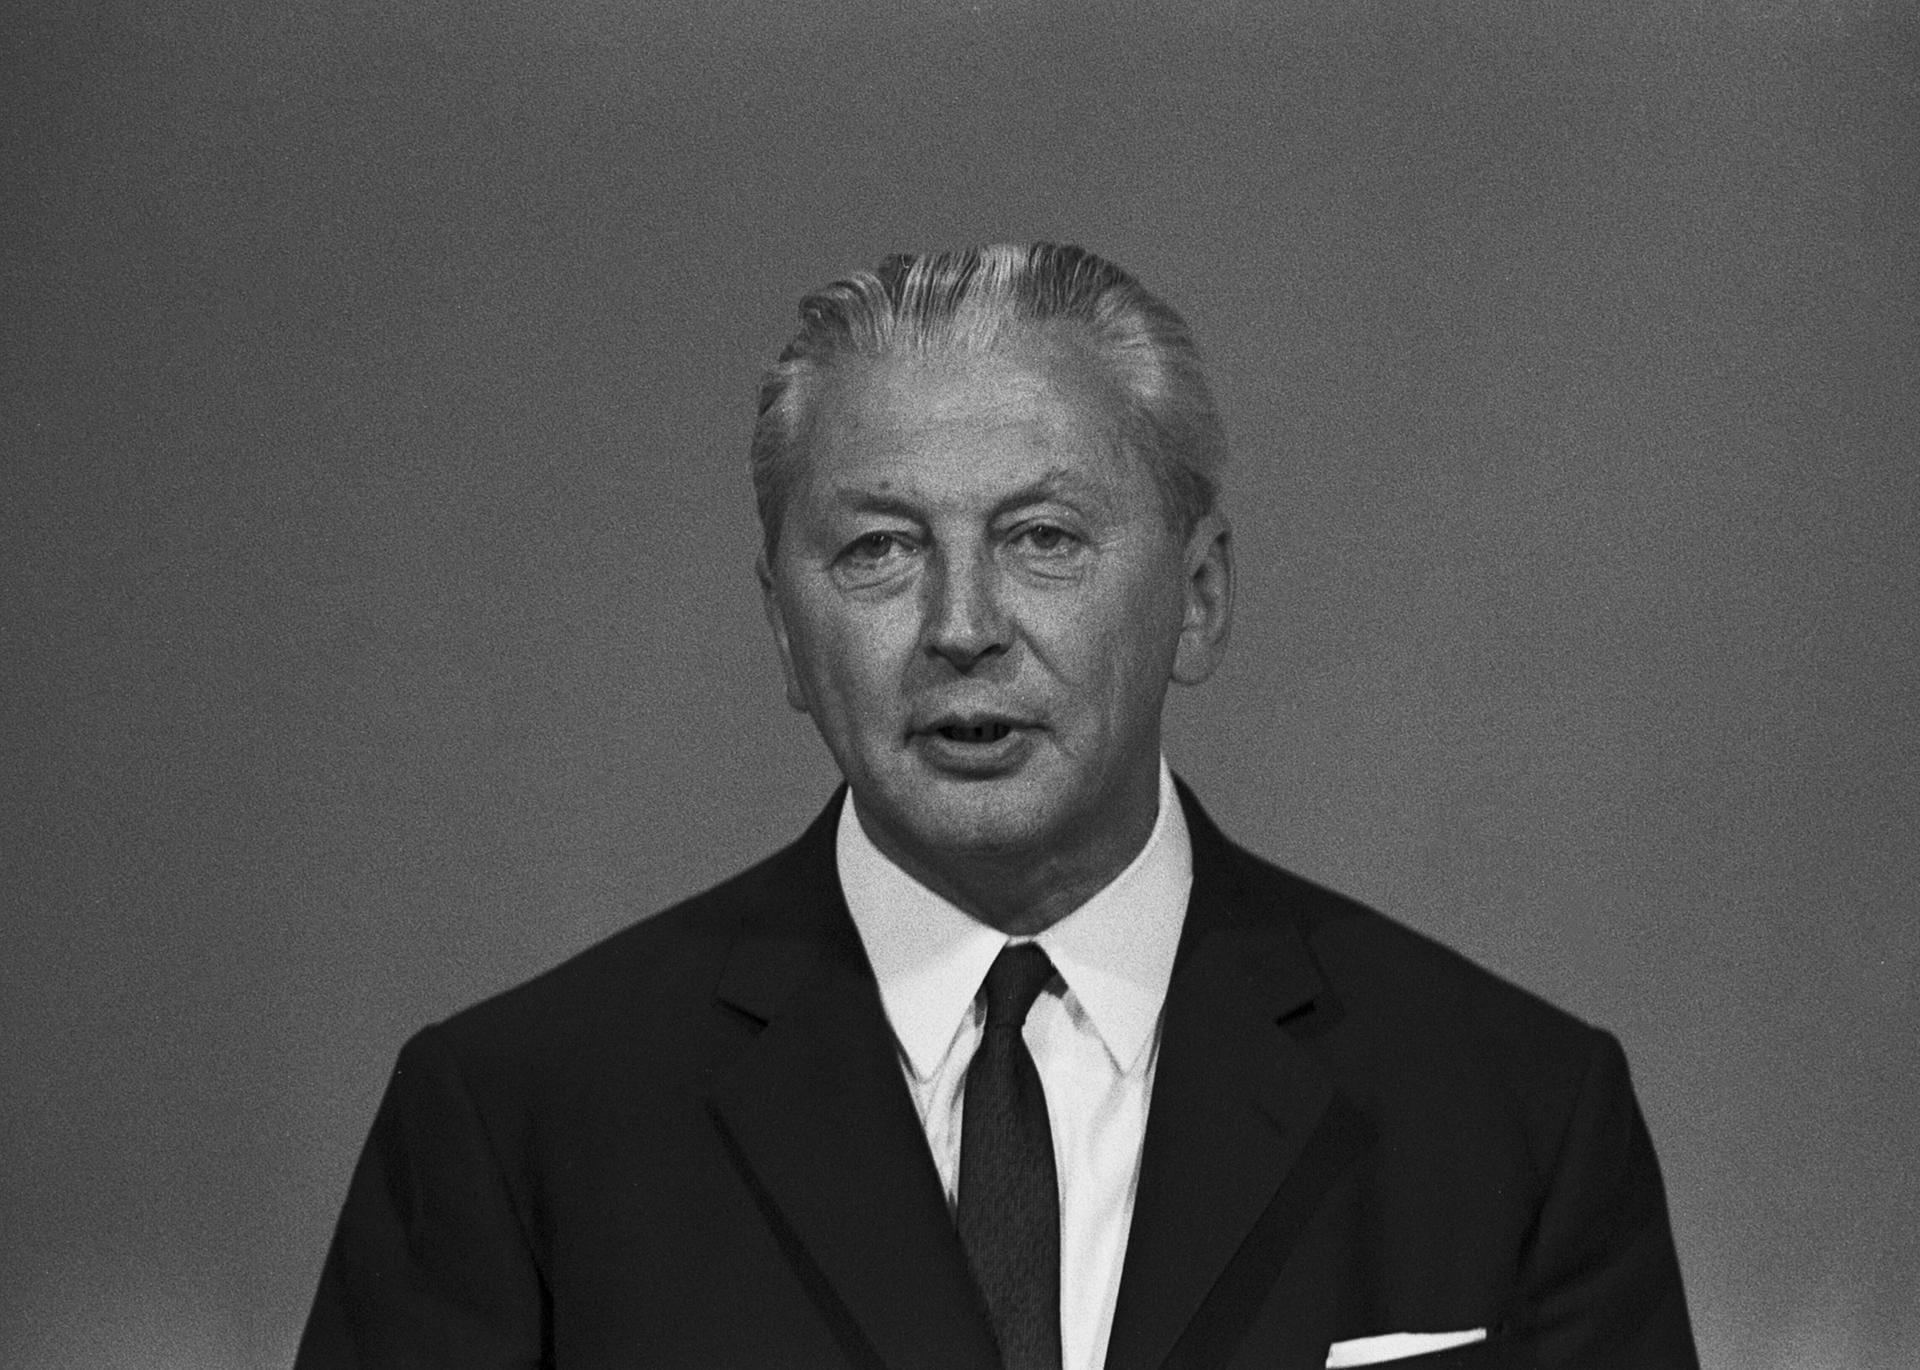 1966 - 1969: Die erste Große Koalition in der Geschichte der BRD wird von Kurt Georg Kiesinger geführt. Die Überwindung einer Wirtschaftskrise steht im Zentrum seiner Amtszeit. Öffentliche Kritik erfährt er für seine aktive Mitgliedschaft in der NSDAP zur Zeit des Nationalsozialismus.